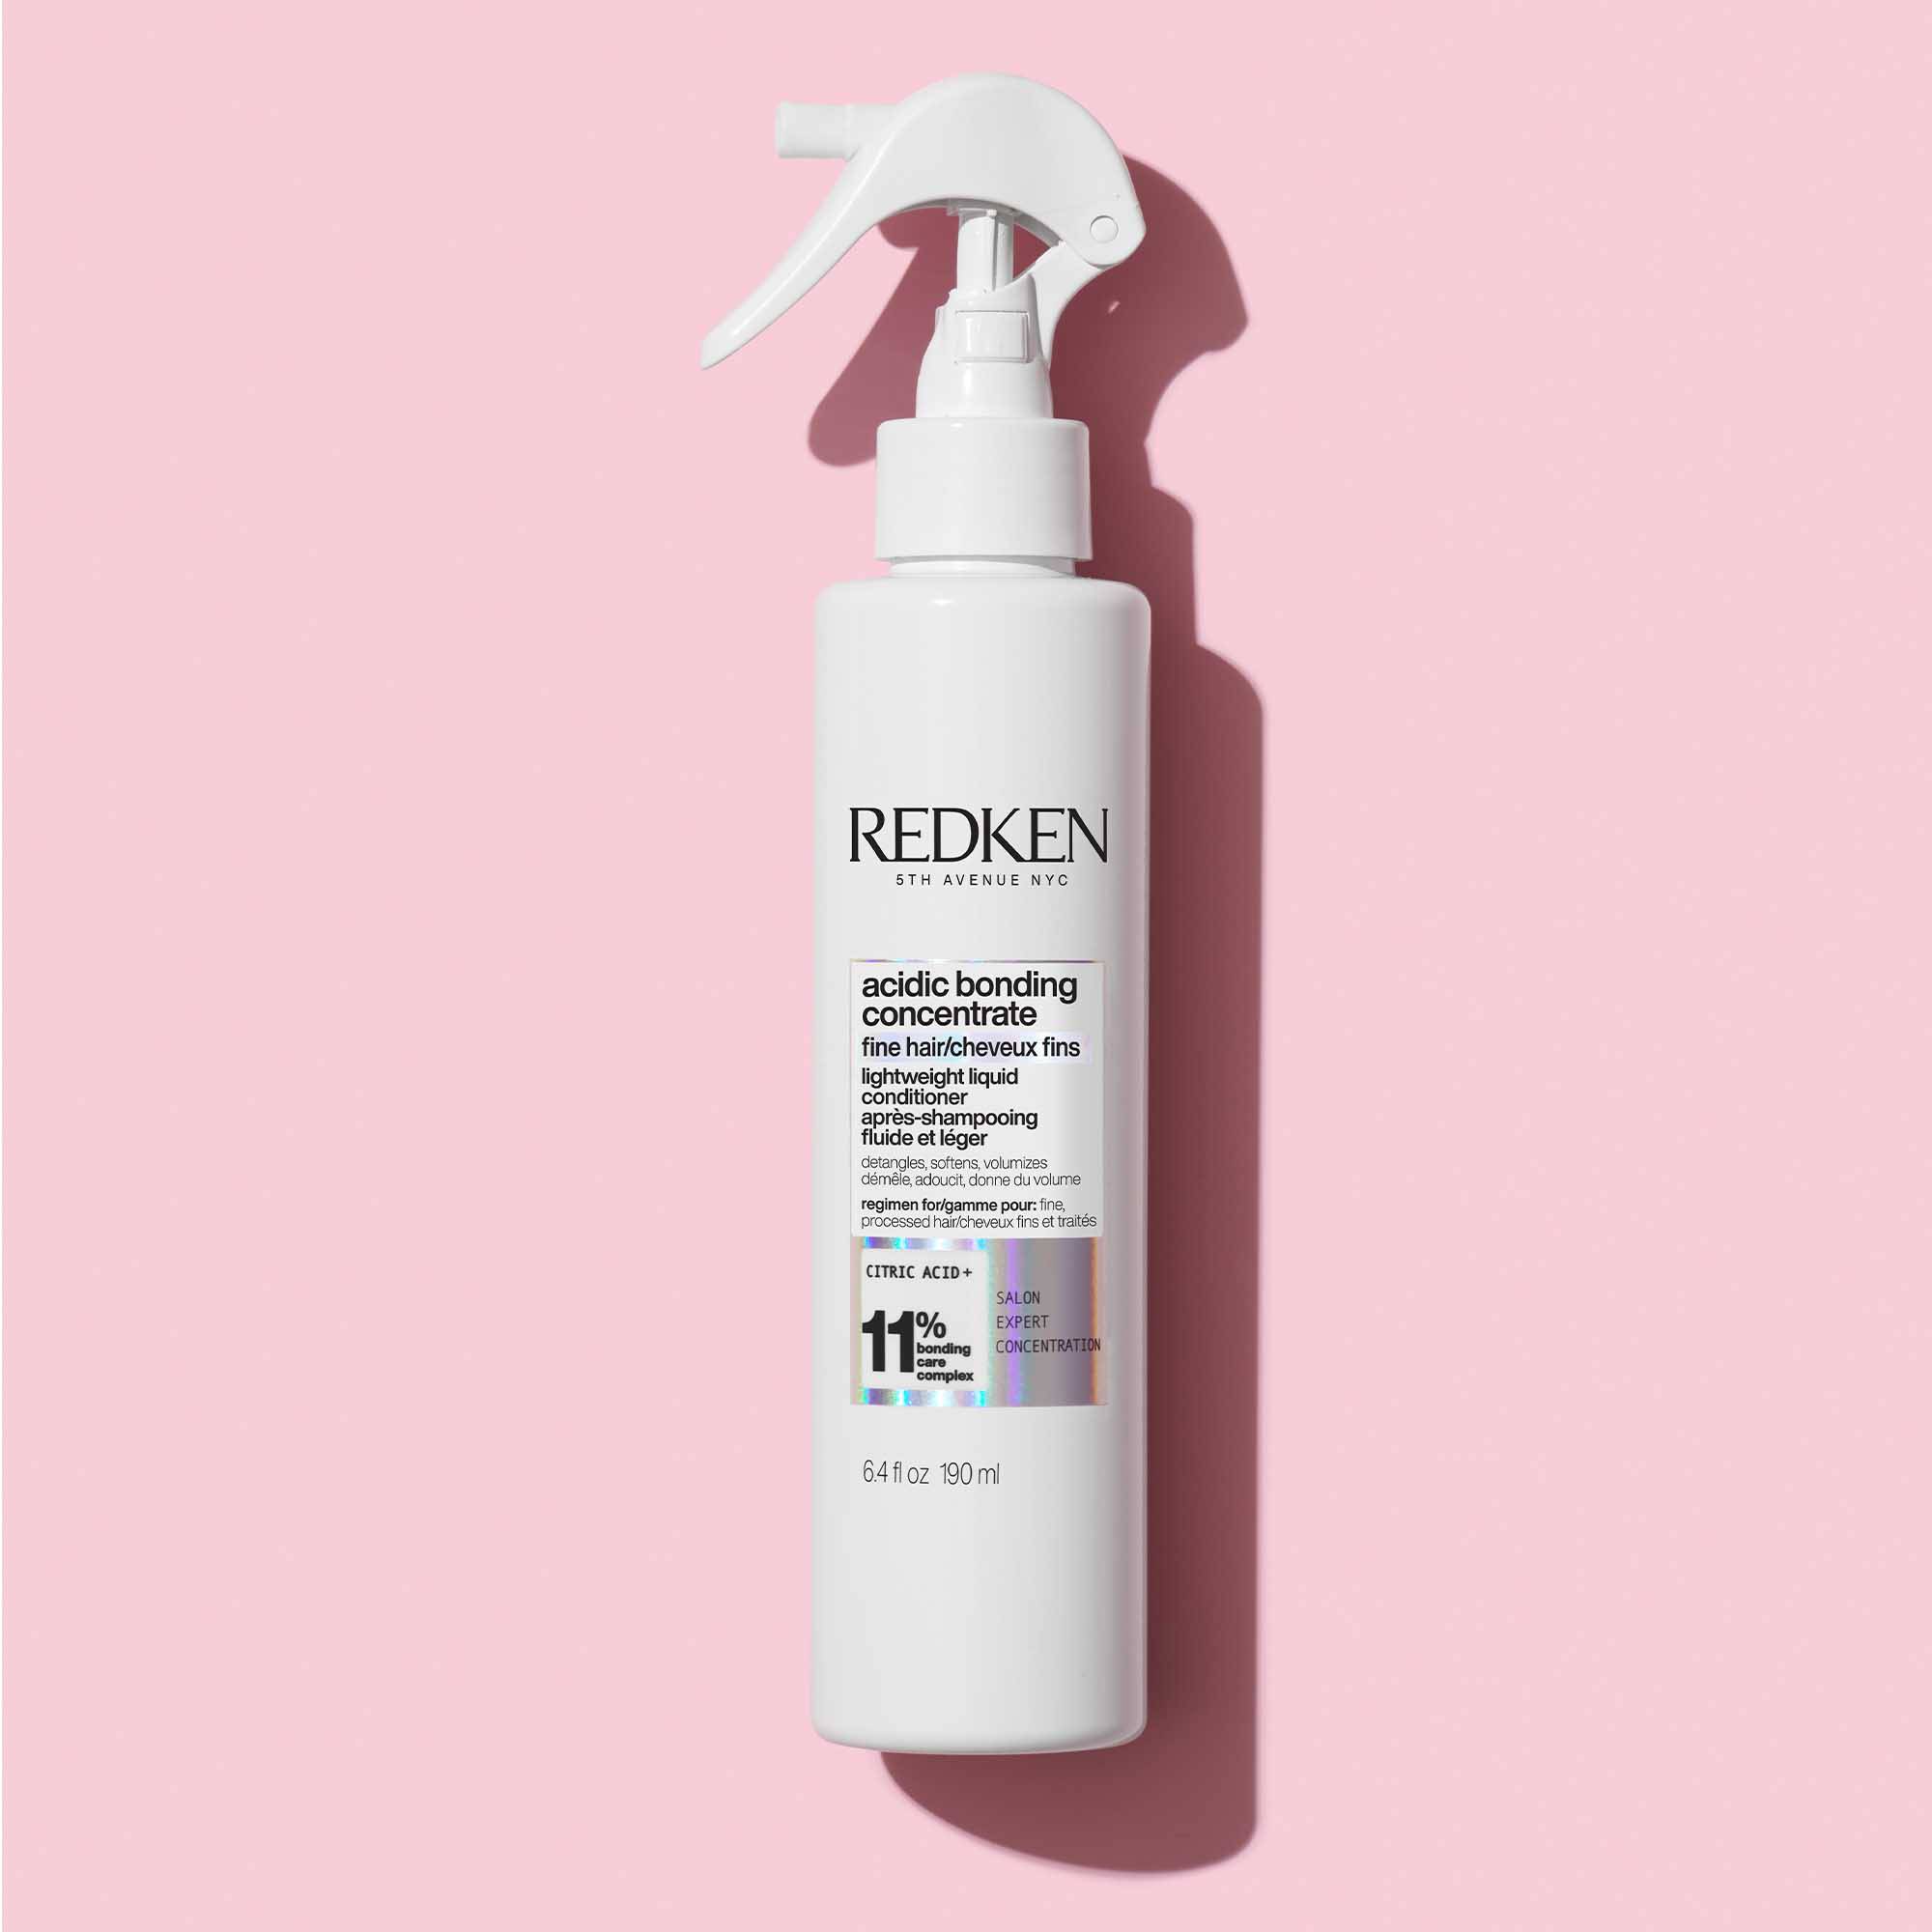 Après-shampoing ultra léger Acidic Bonding Concentrate de la marque Redken Contenance 190ml - 2